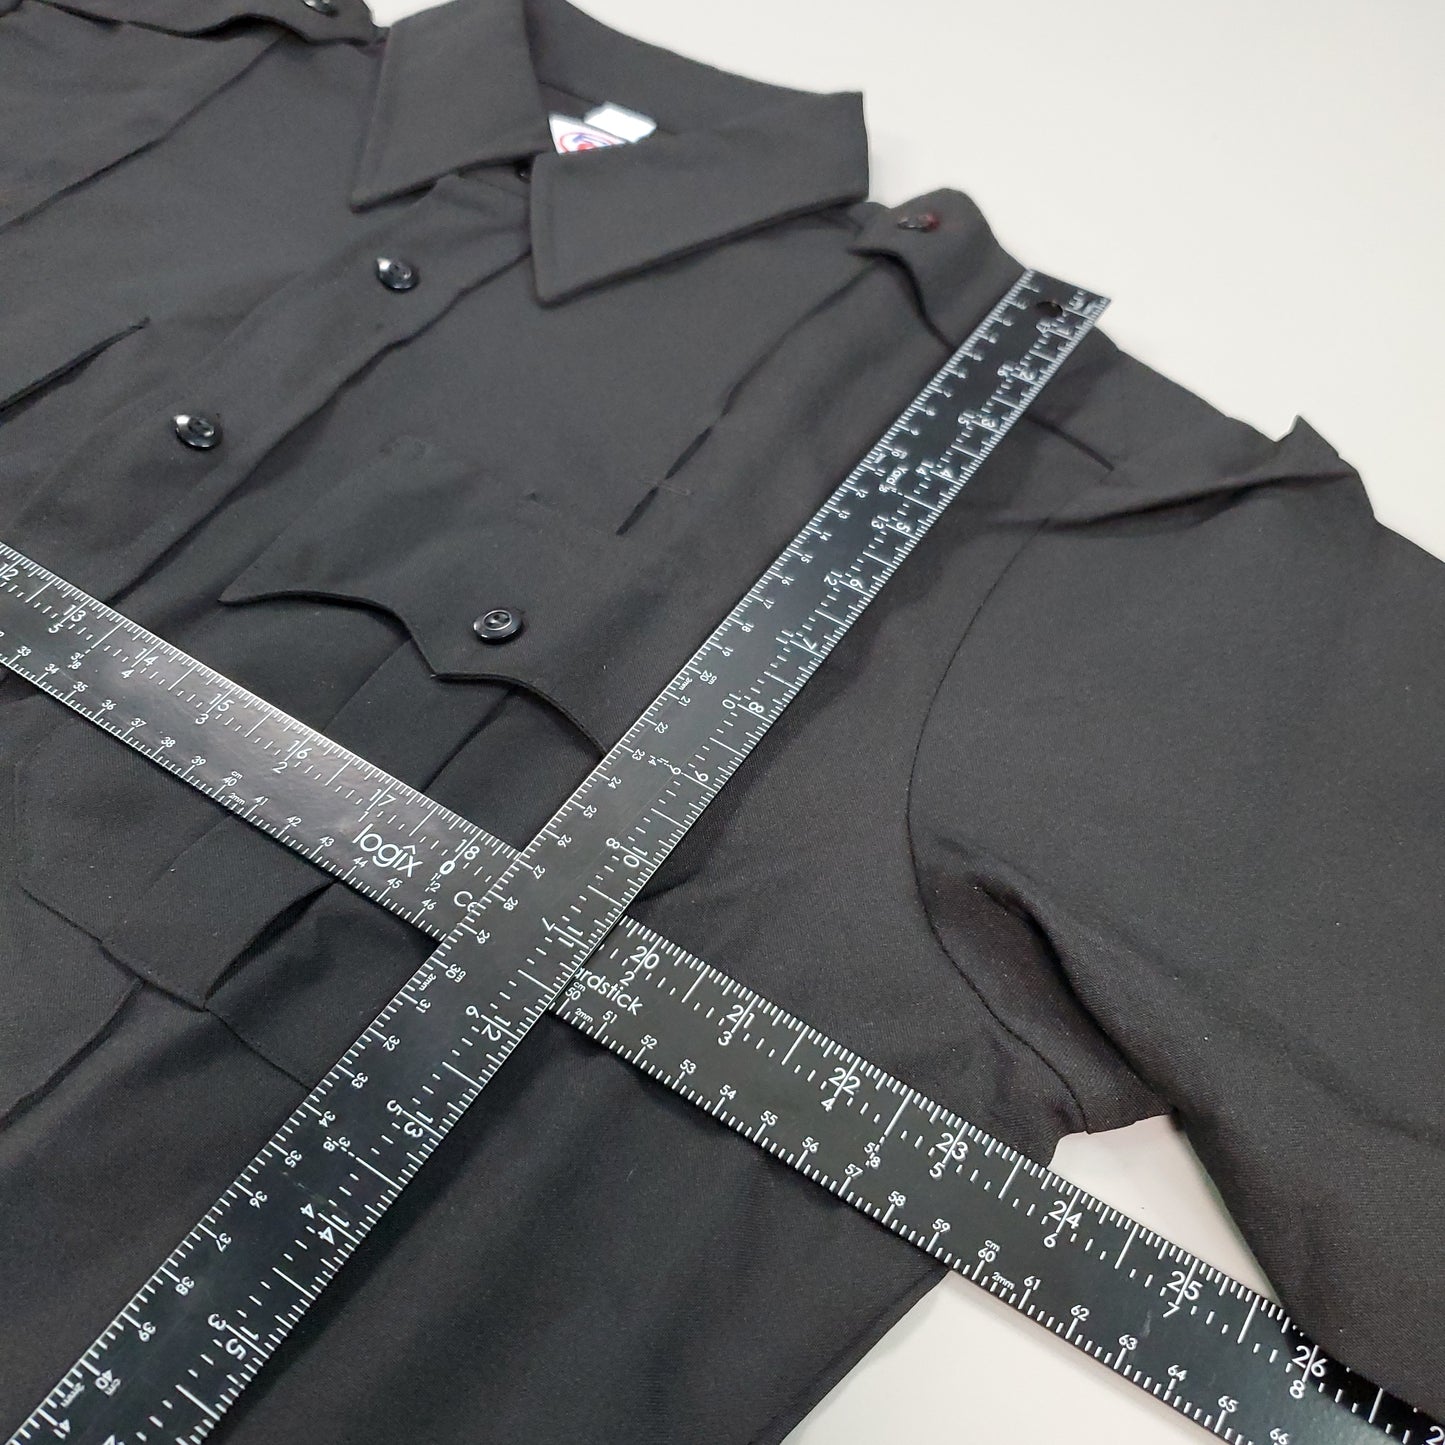 FIRST CLASS Long Sleeve Uniform Shirt Men's Sz L Black LS03 (New)